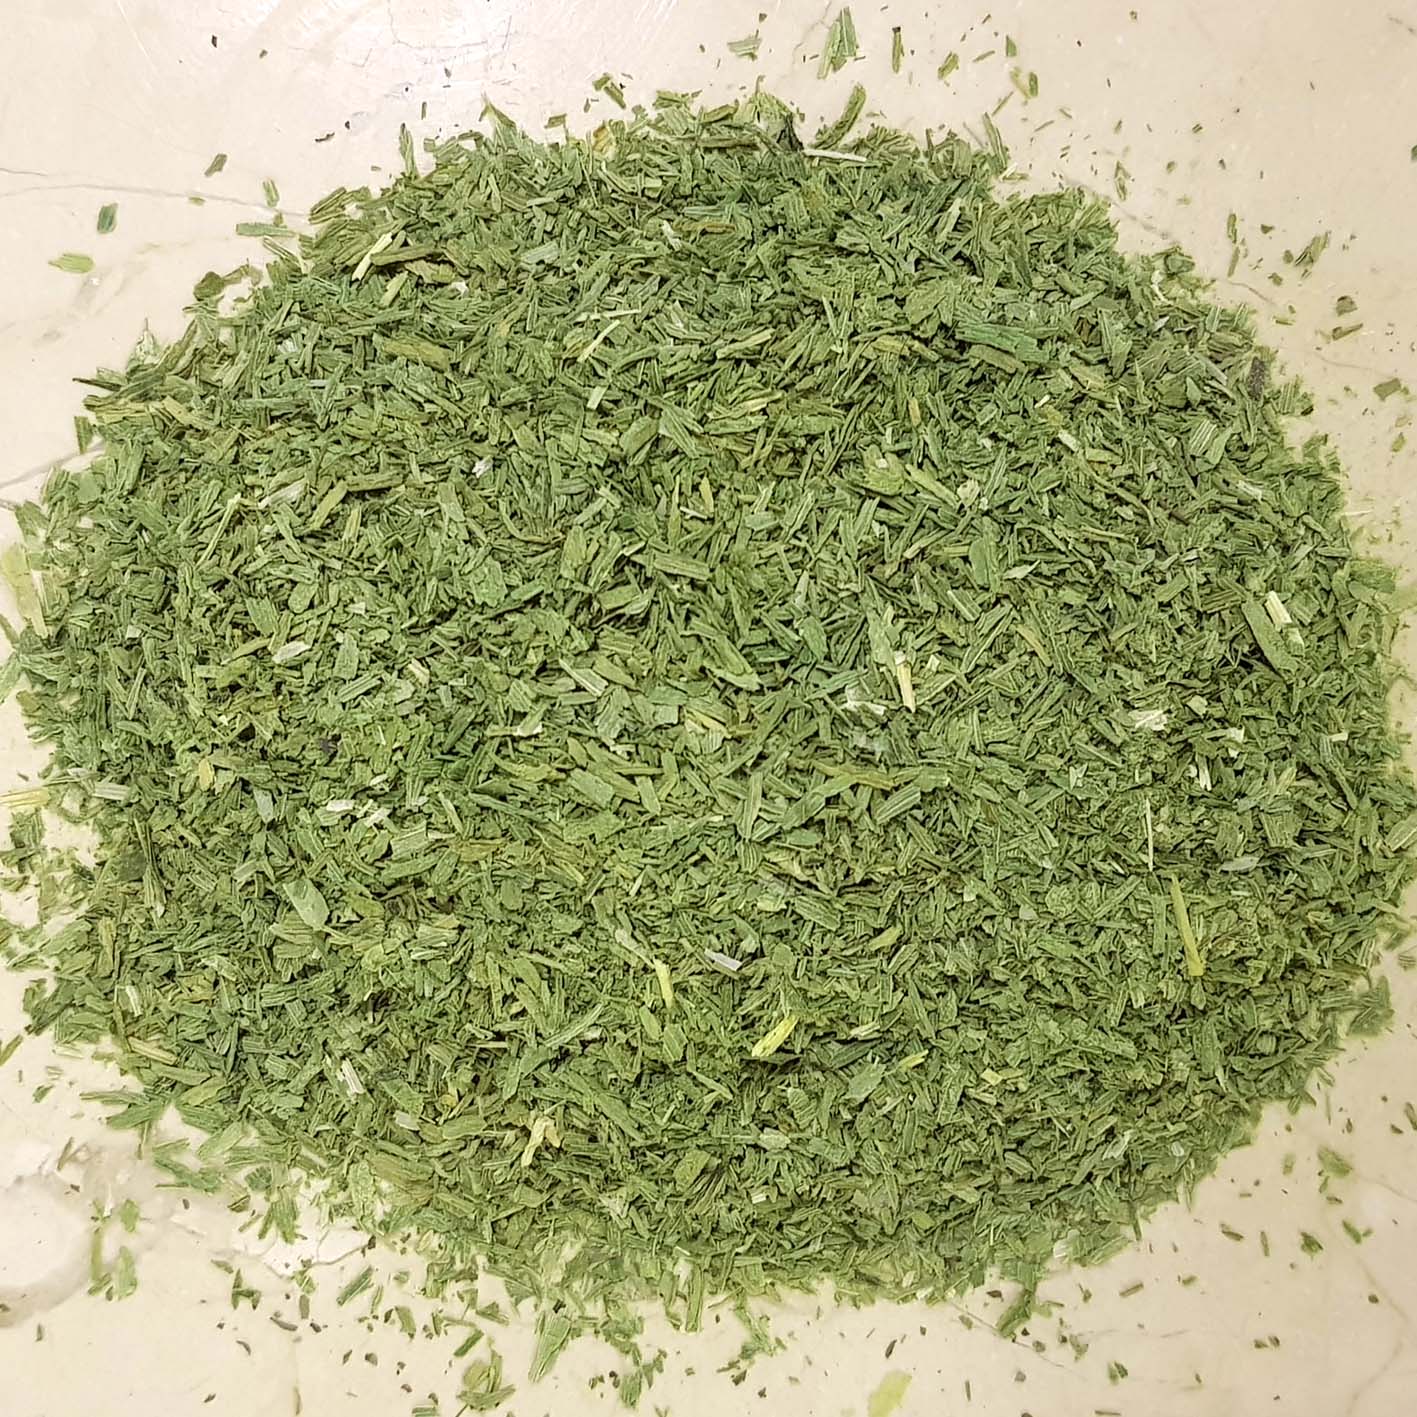 سبزی پیازچه خشک روحبخش - 100 گرم